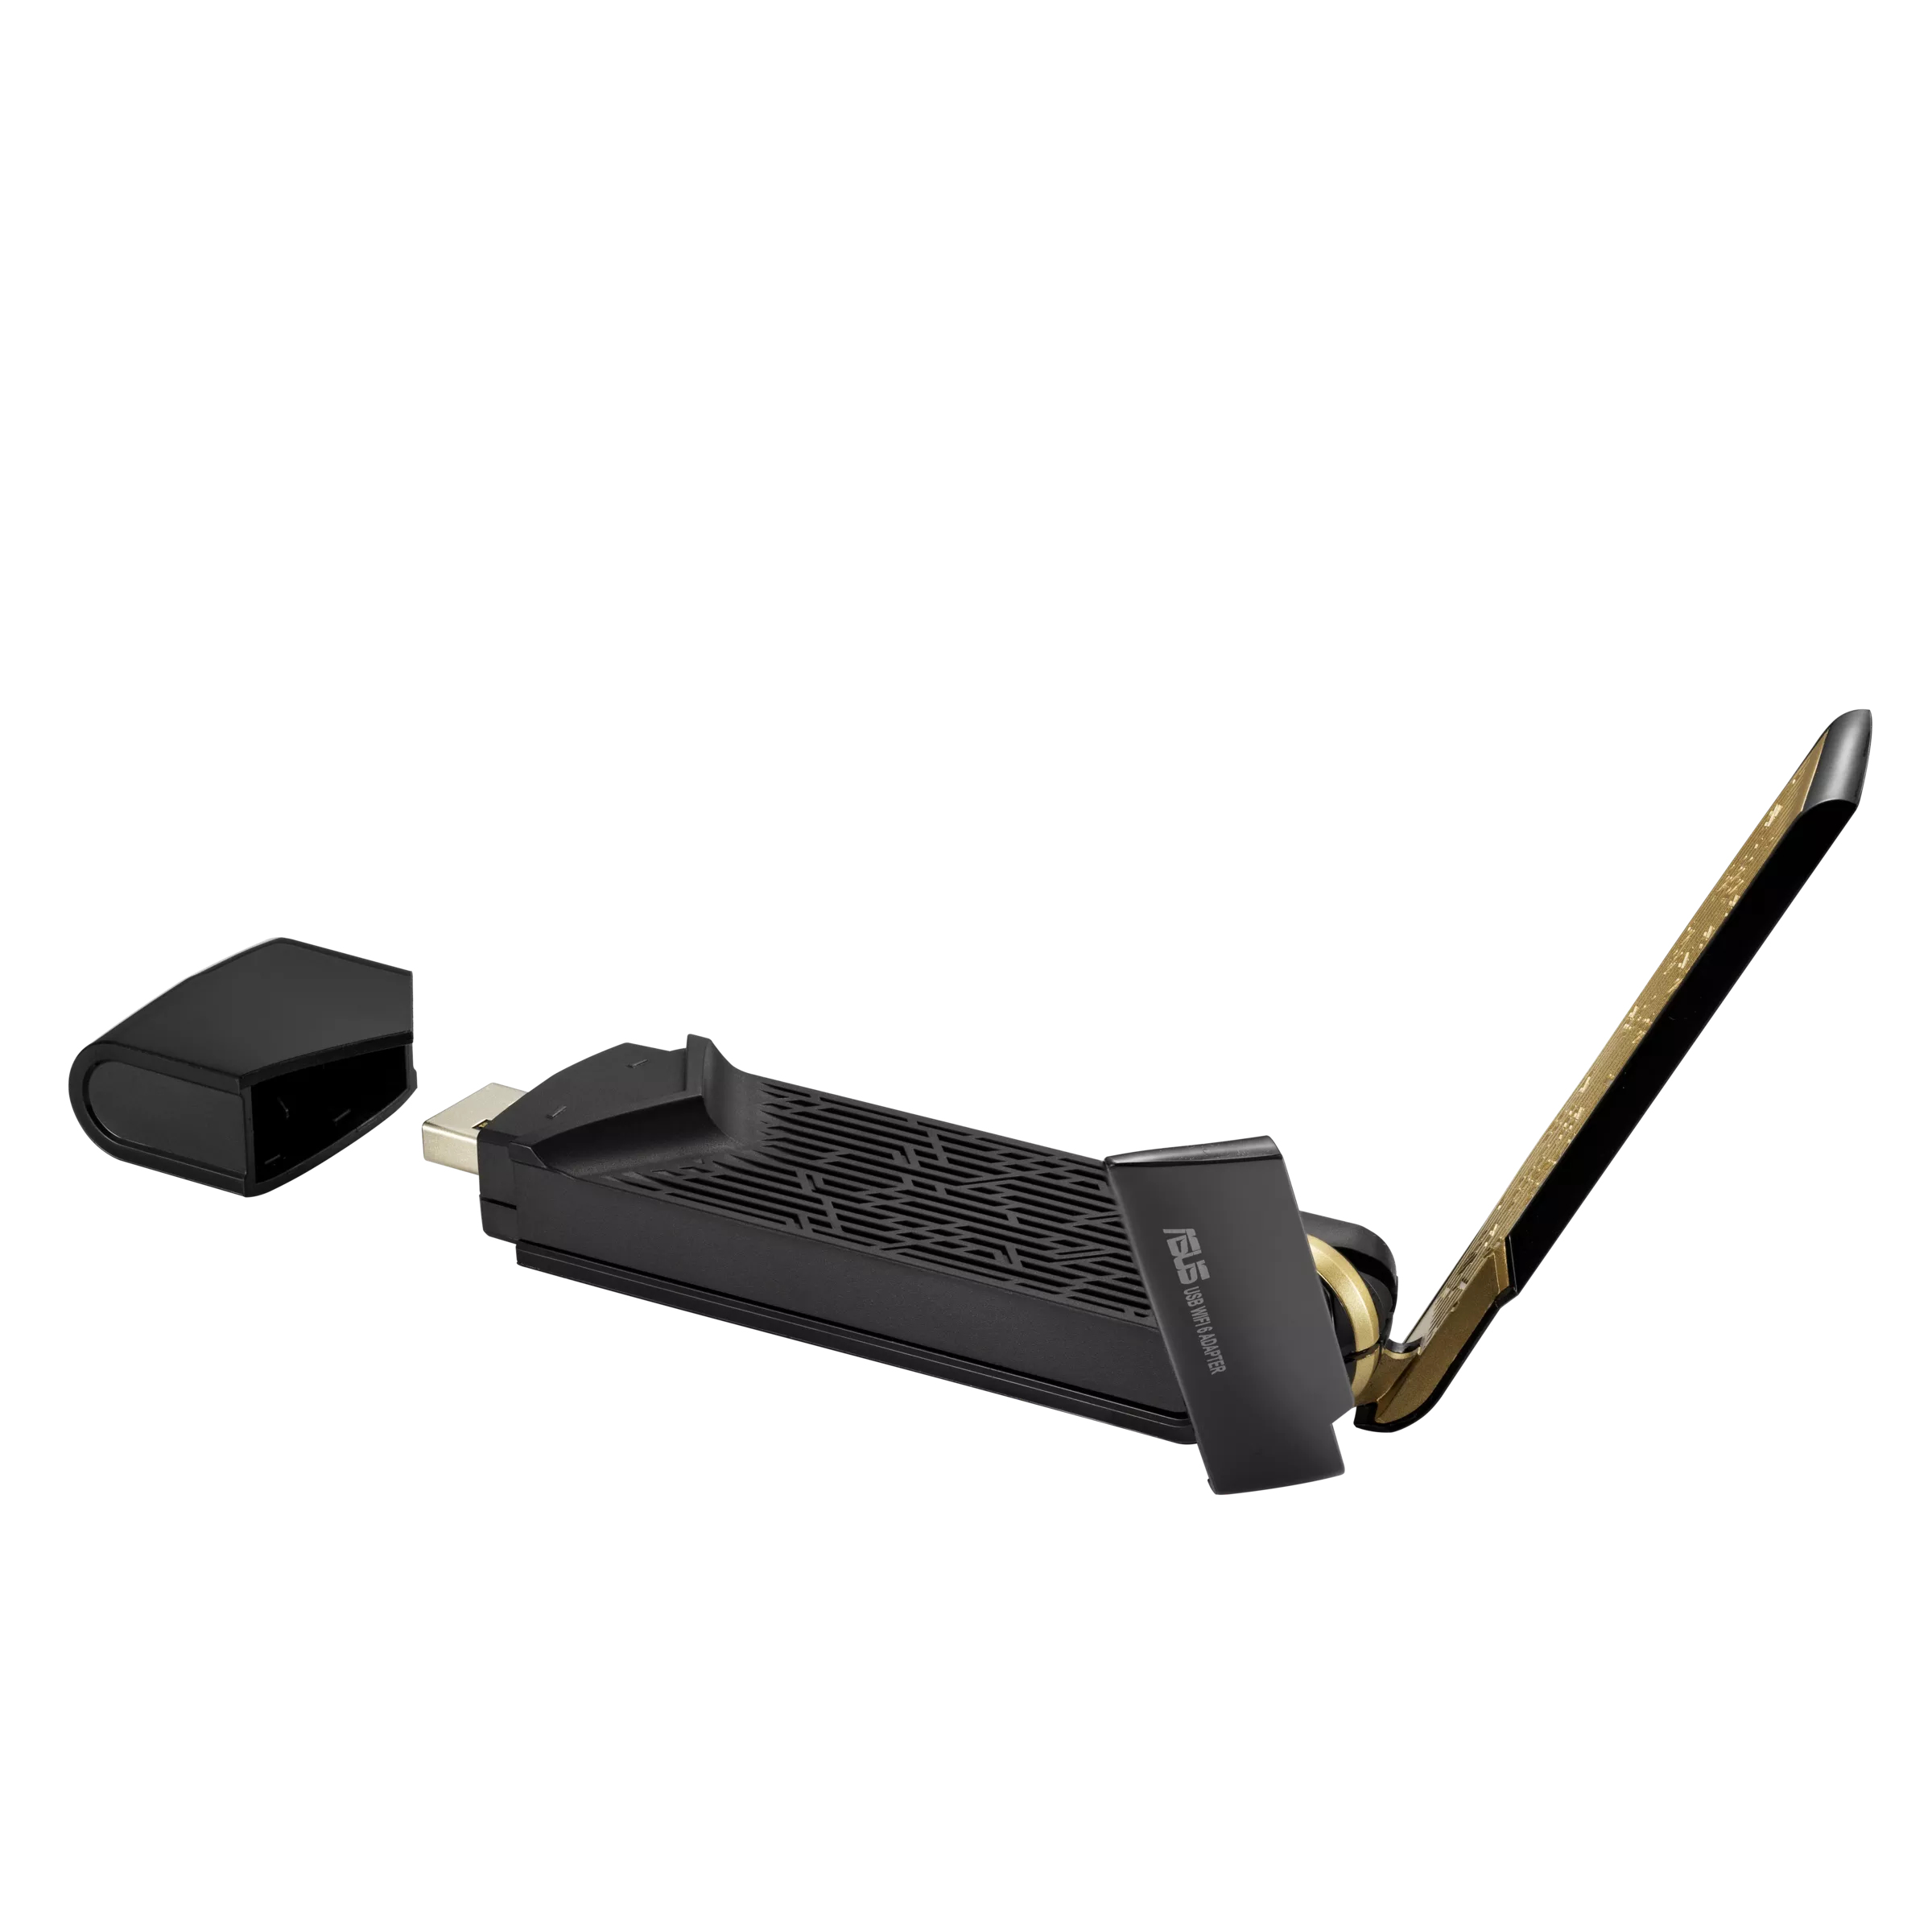 ASUS USB-AX56 WLAN-Adapter